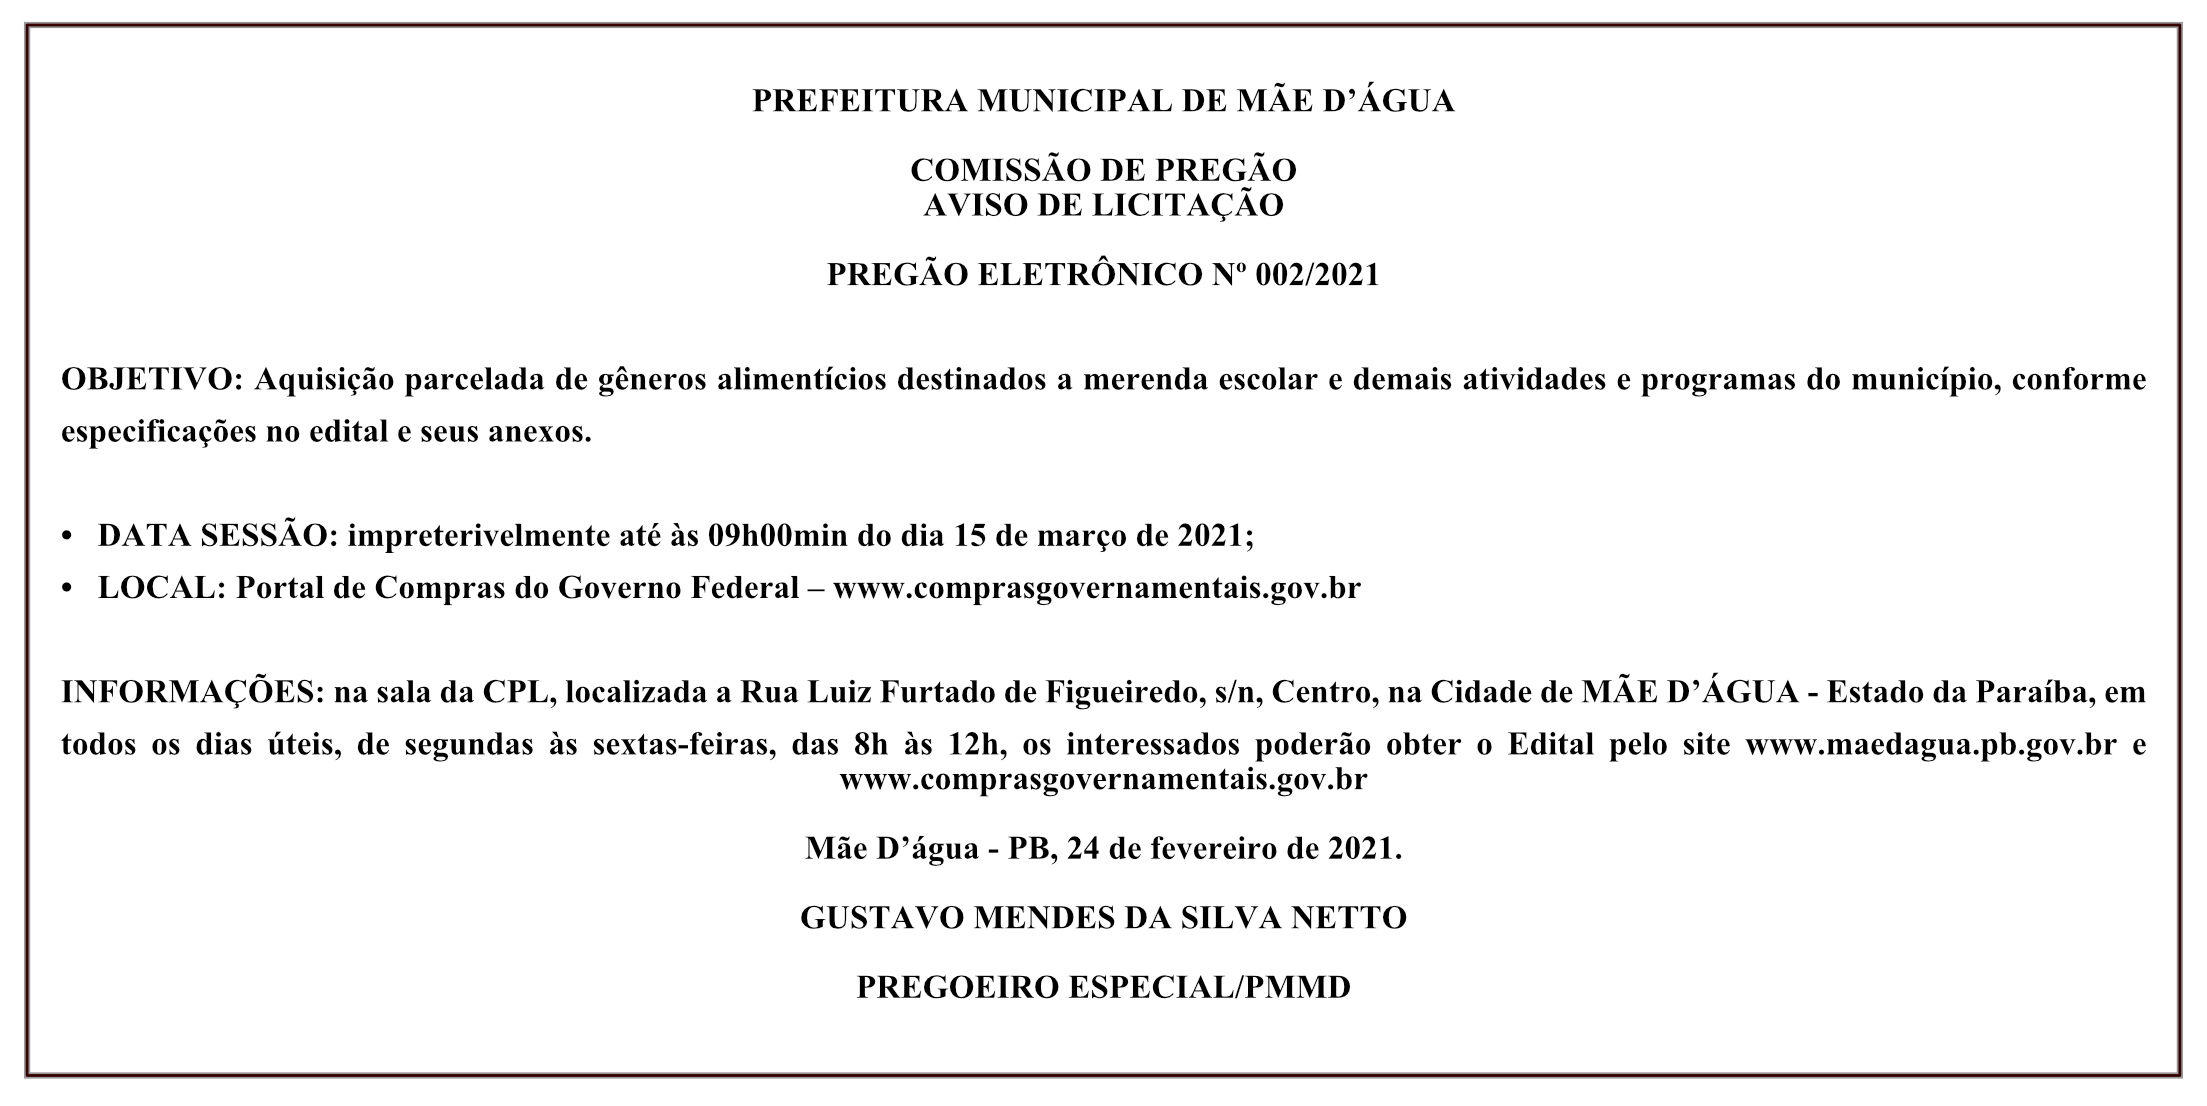 PREFEITURA MUNICIPAL DE MÃE D’ÁGUA – COMISSÃO DE PREGÃO – AVISO DE LICITAÇÃO – PREGÃO ELETRÔNICO Nº 002/2021